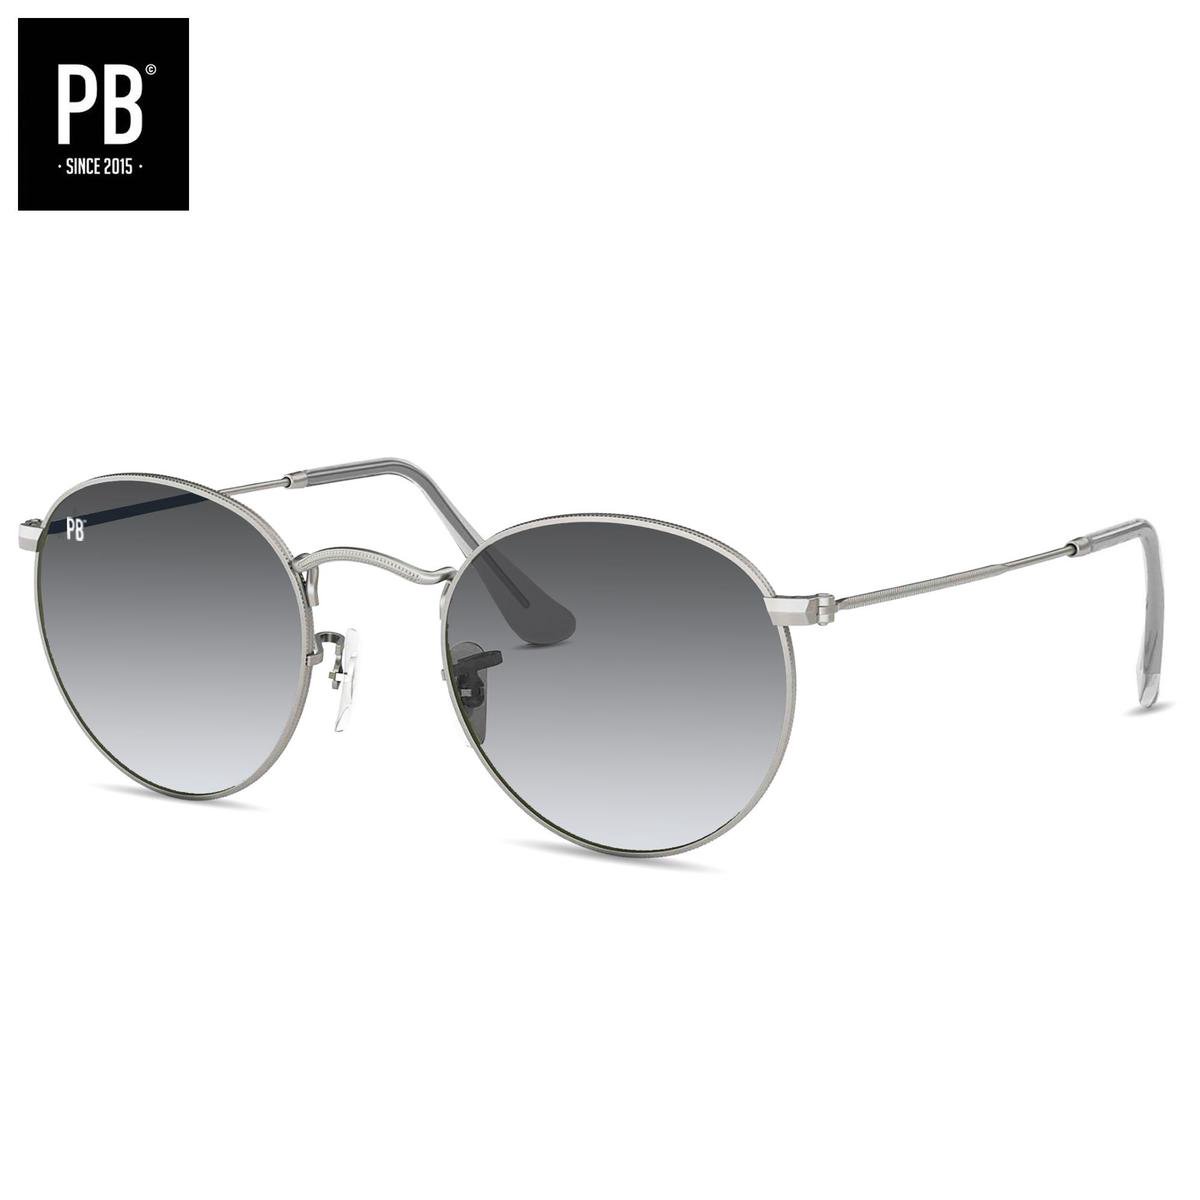 PB Sunglasses - Round Silver Gradient Grey. - Zonnebril heren en dames - Gepolariseerd - Ronde vorming - Zilver frame